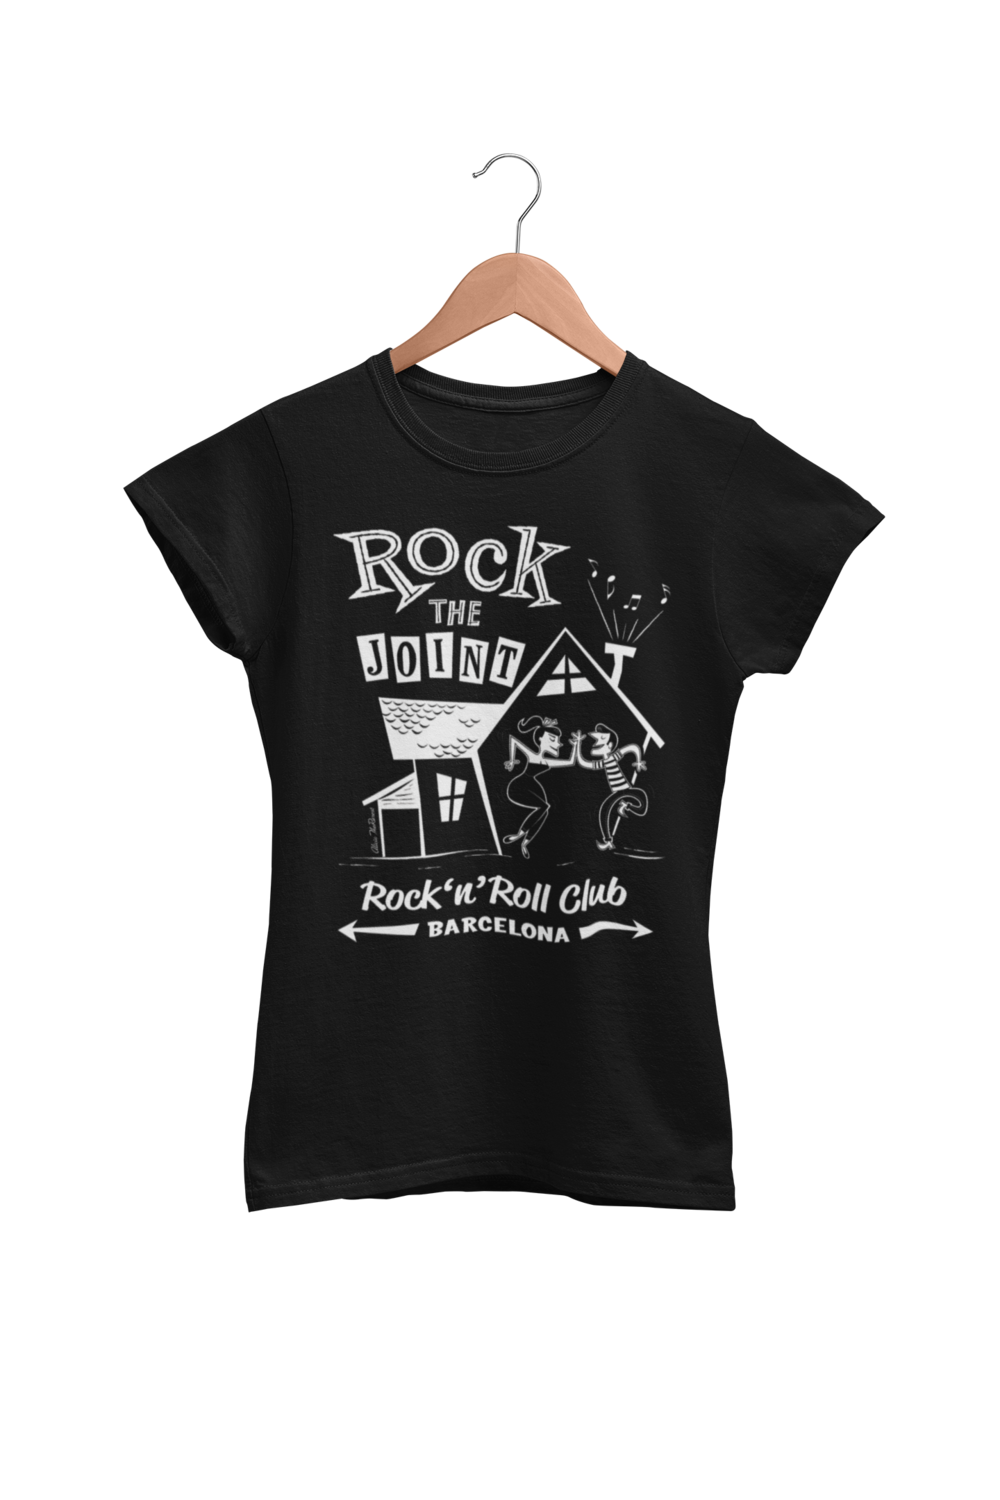 Rock the joint Club tshirt
T-SHIRT WOMAN